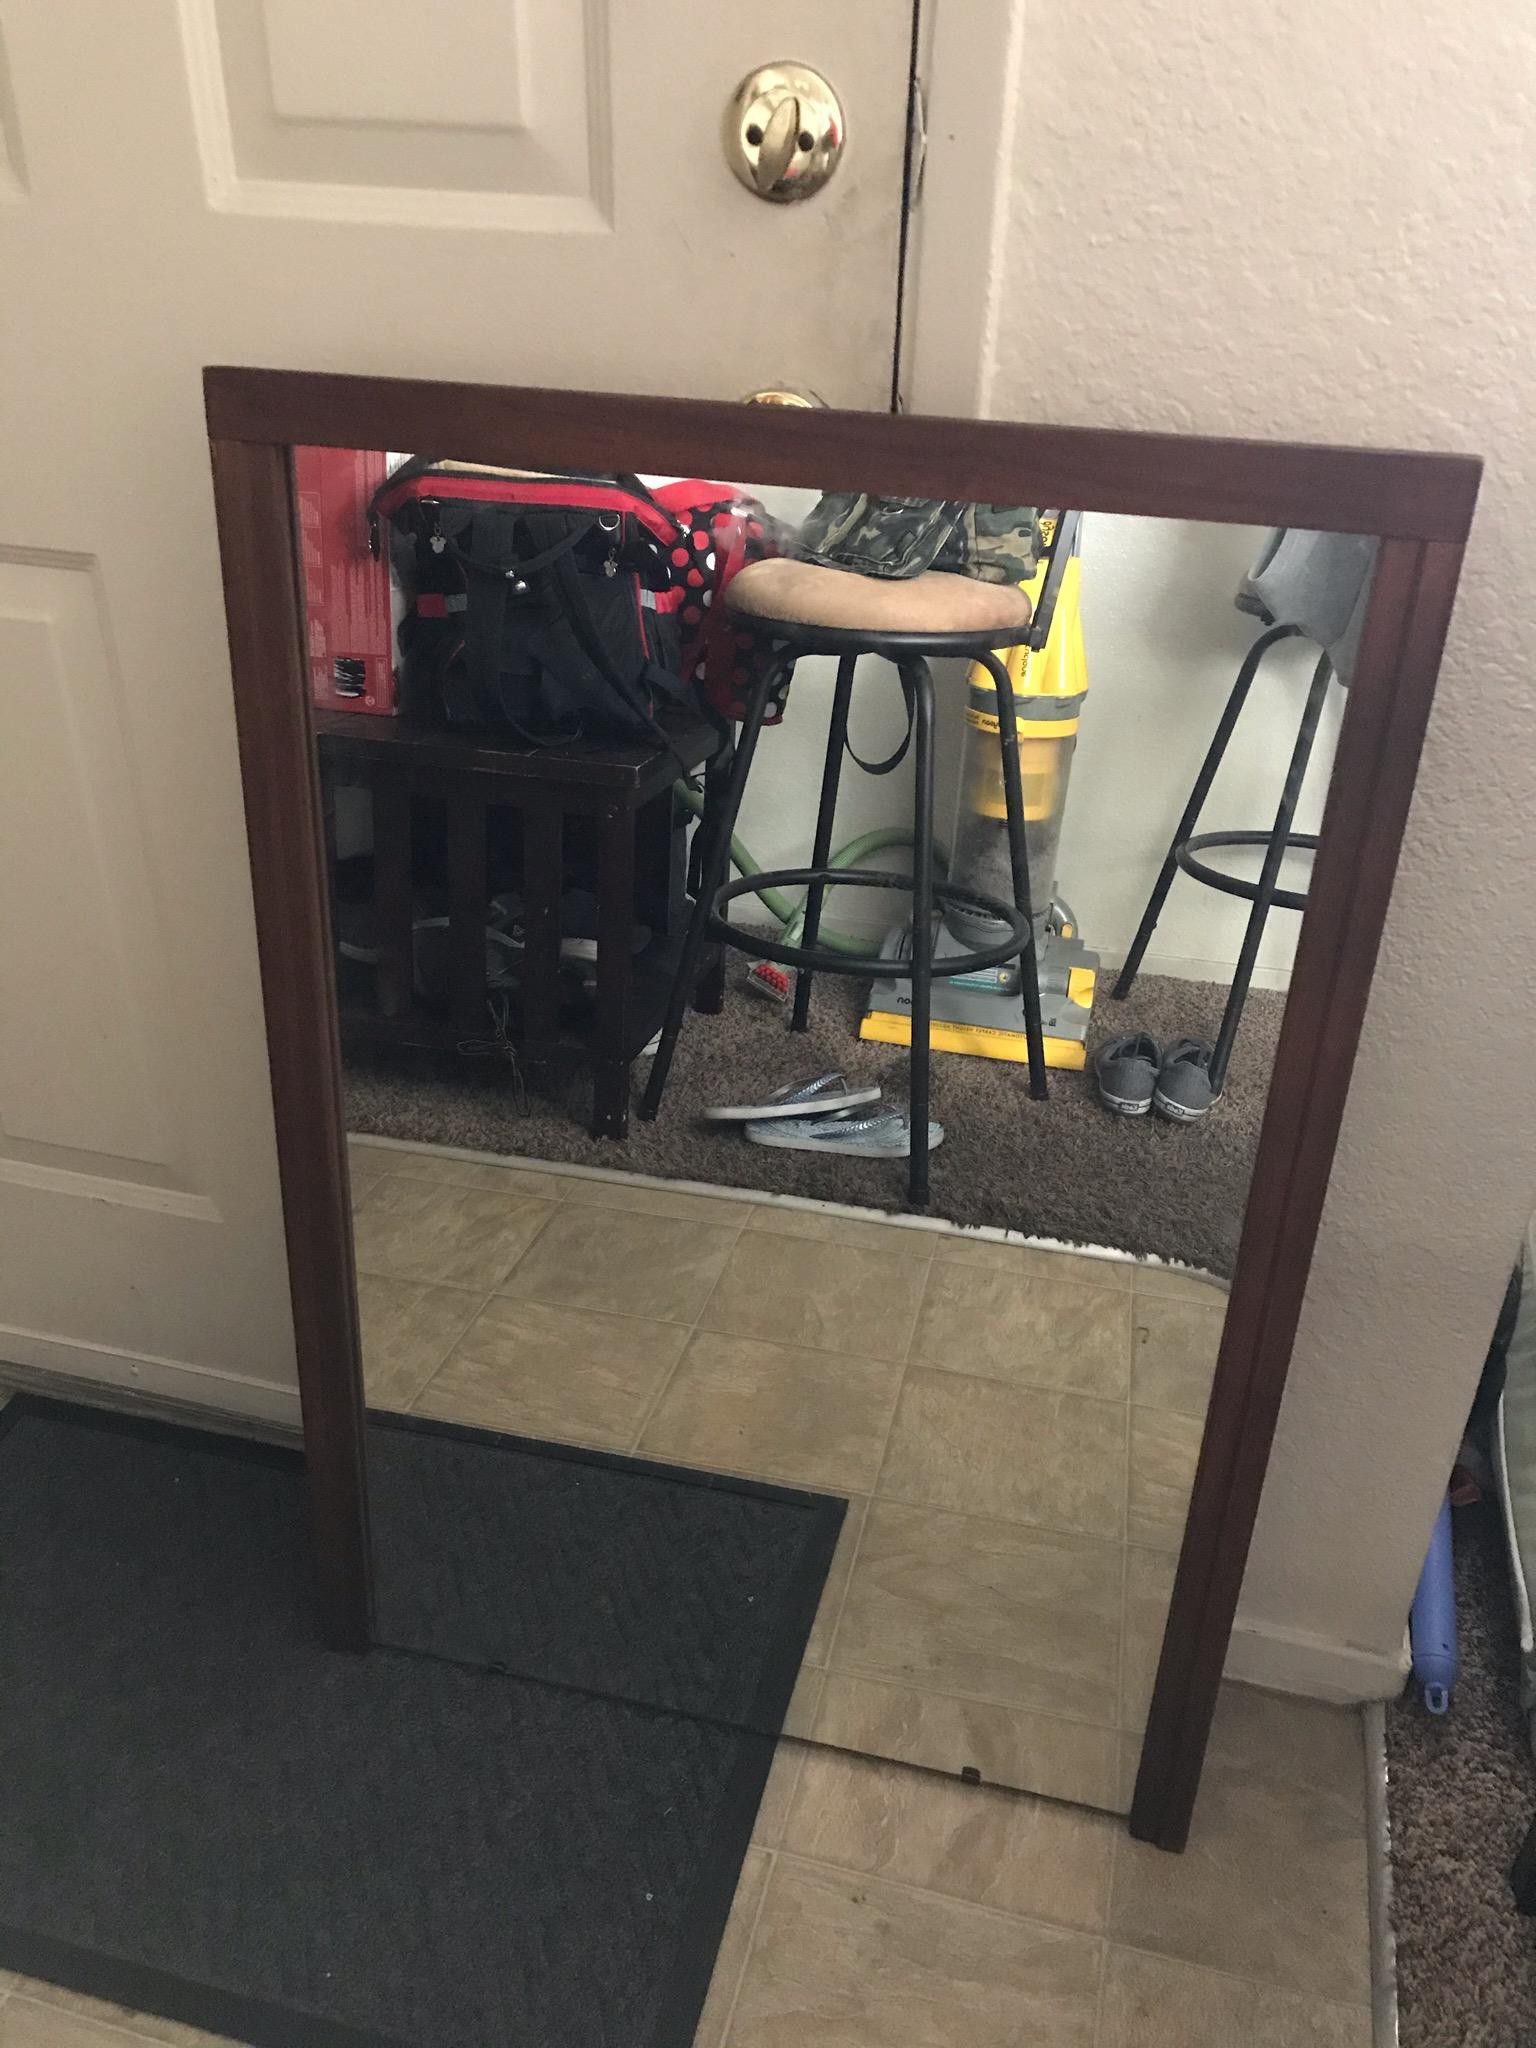 Dresser mirror or standalone mirror